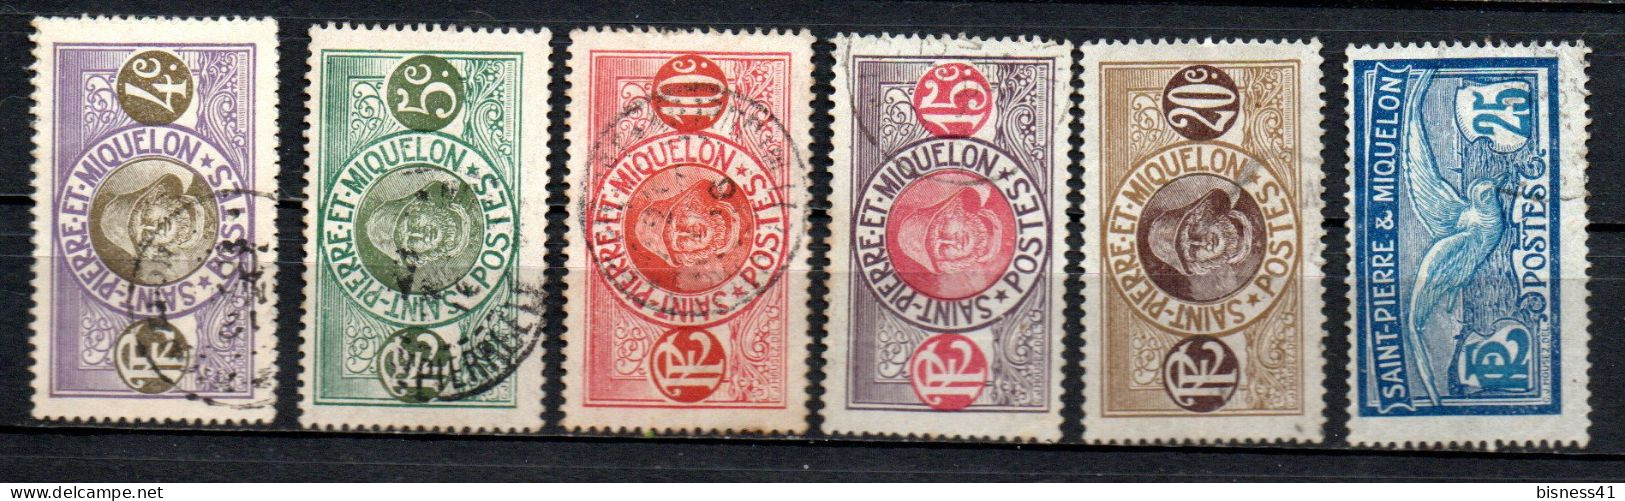 Col33 Colonie SPM Saint Pierre Et Miquelon N° 80 à 84 Oblitéré Cote : 7,25€ - Used Stamps